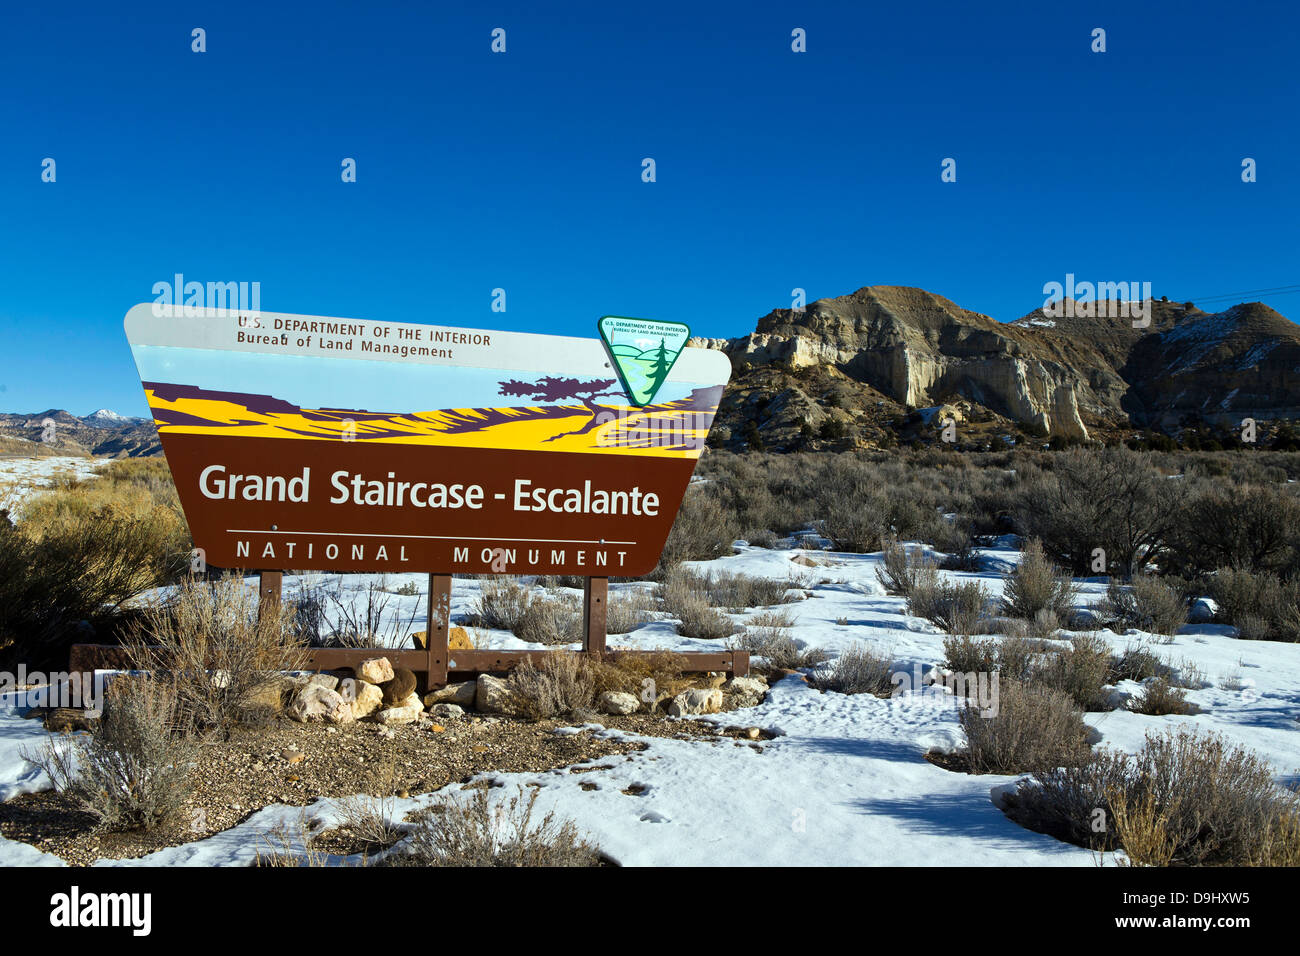 Grand Staircase-Escalante monumento nazionale, Bureau of Land Management segno, Utah, Stati Uniti d'America Foto Stock